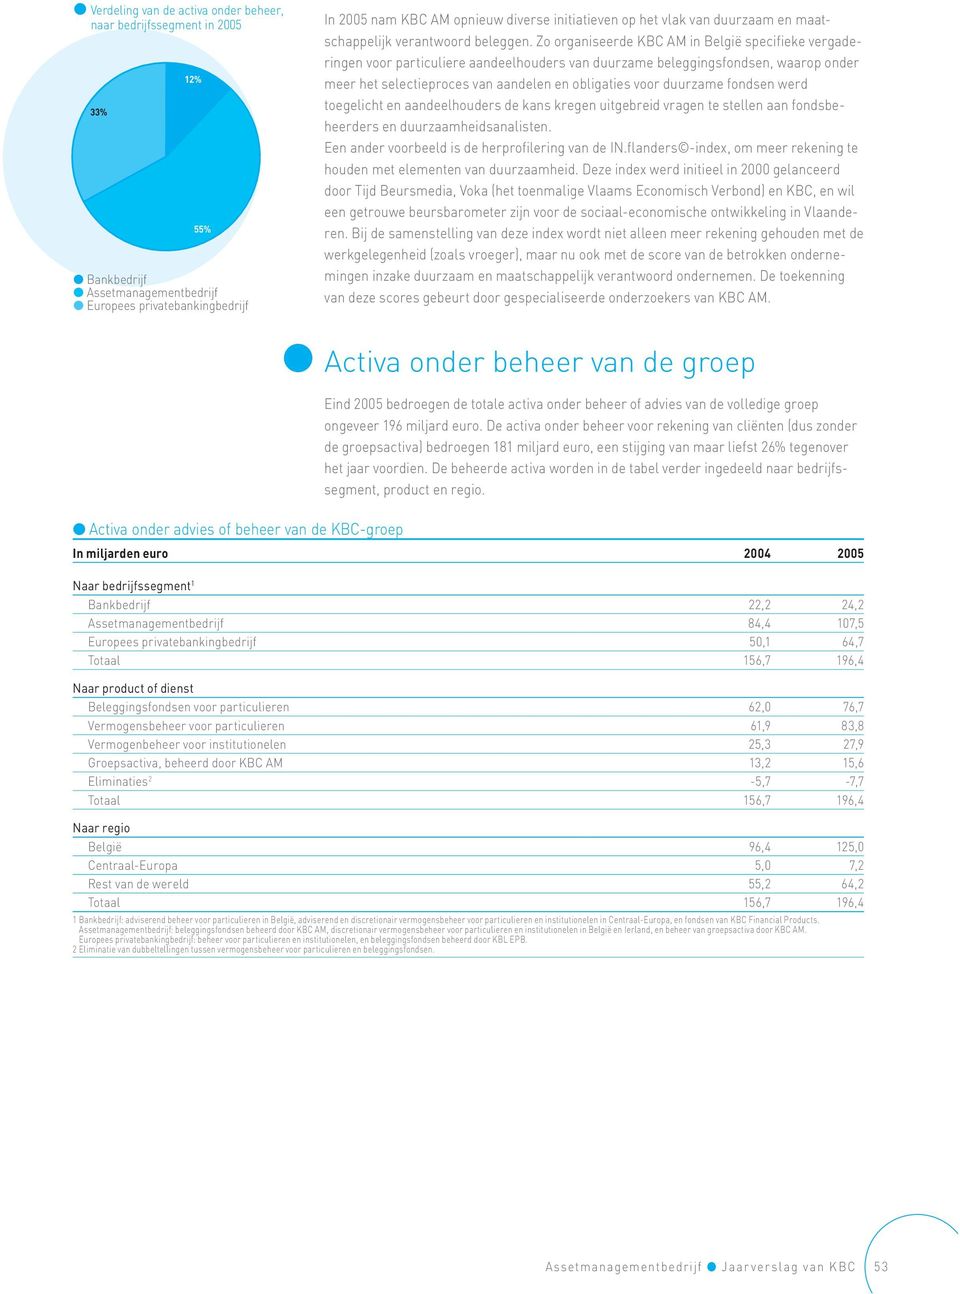 Zo organiseerde KBC AM in België specifieke vergaderingen voor particuliere aandeelhouders van duurzame beleggingsfondsen, waarop onder meer het selectieproces van aandelen en obligaties voor